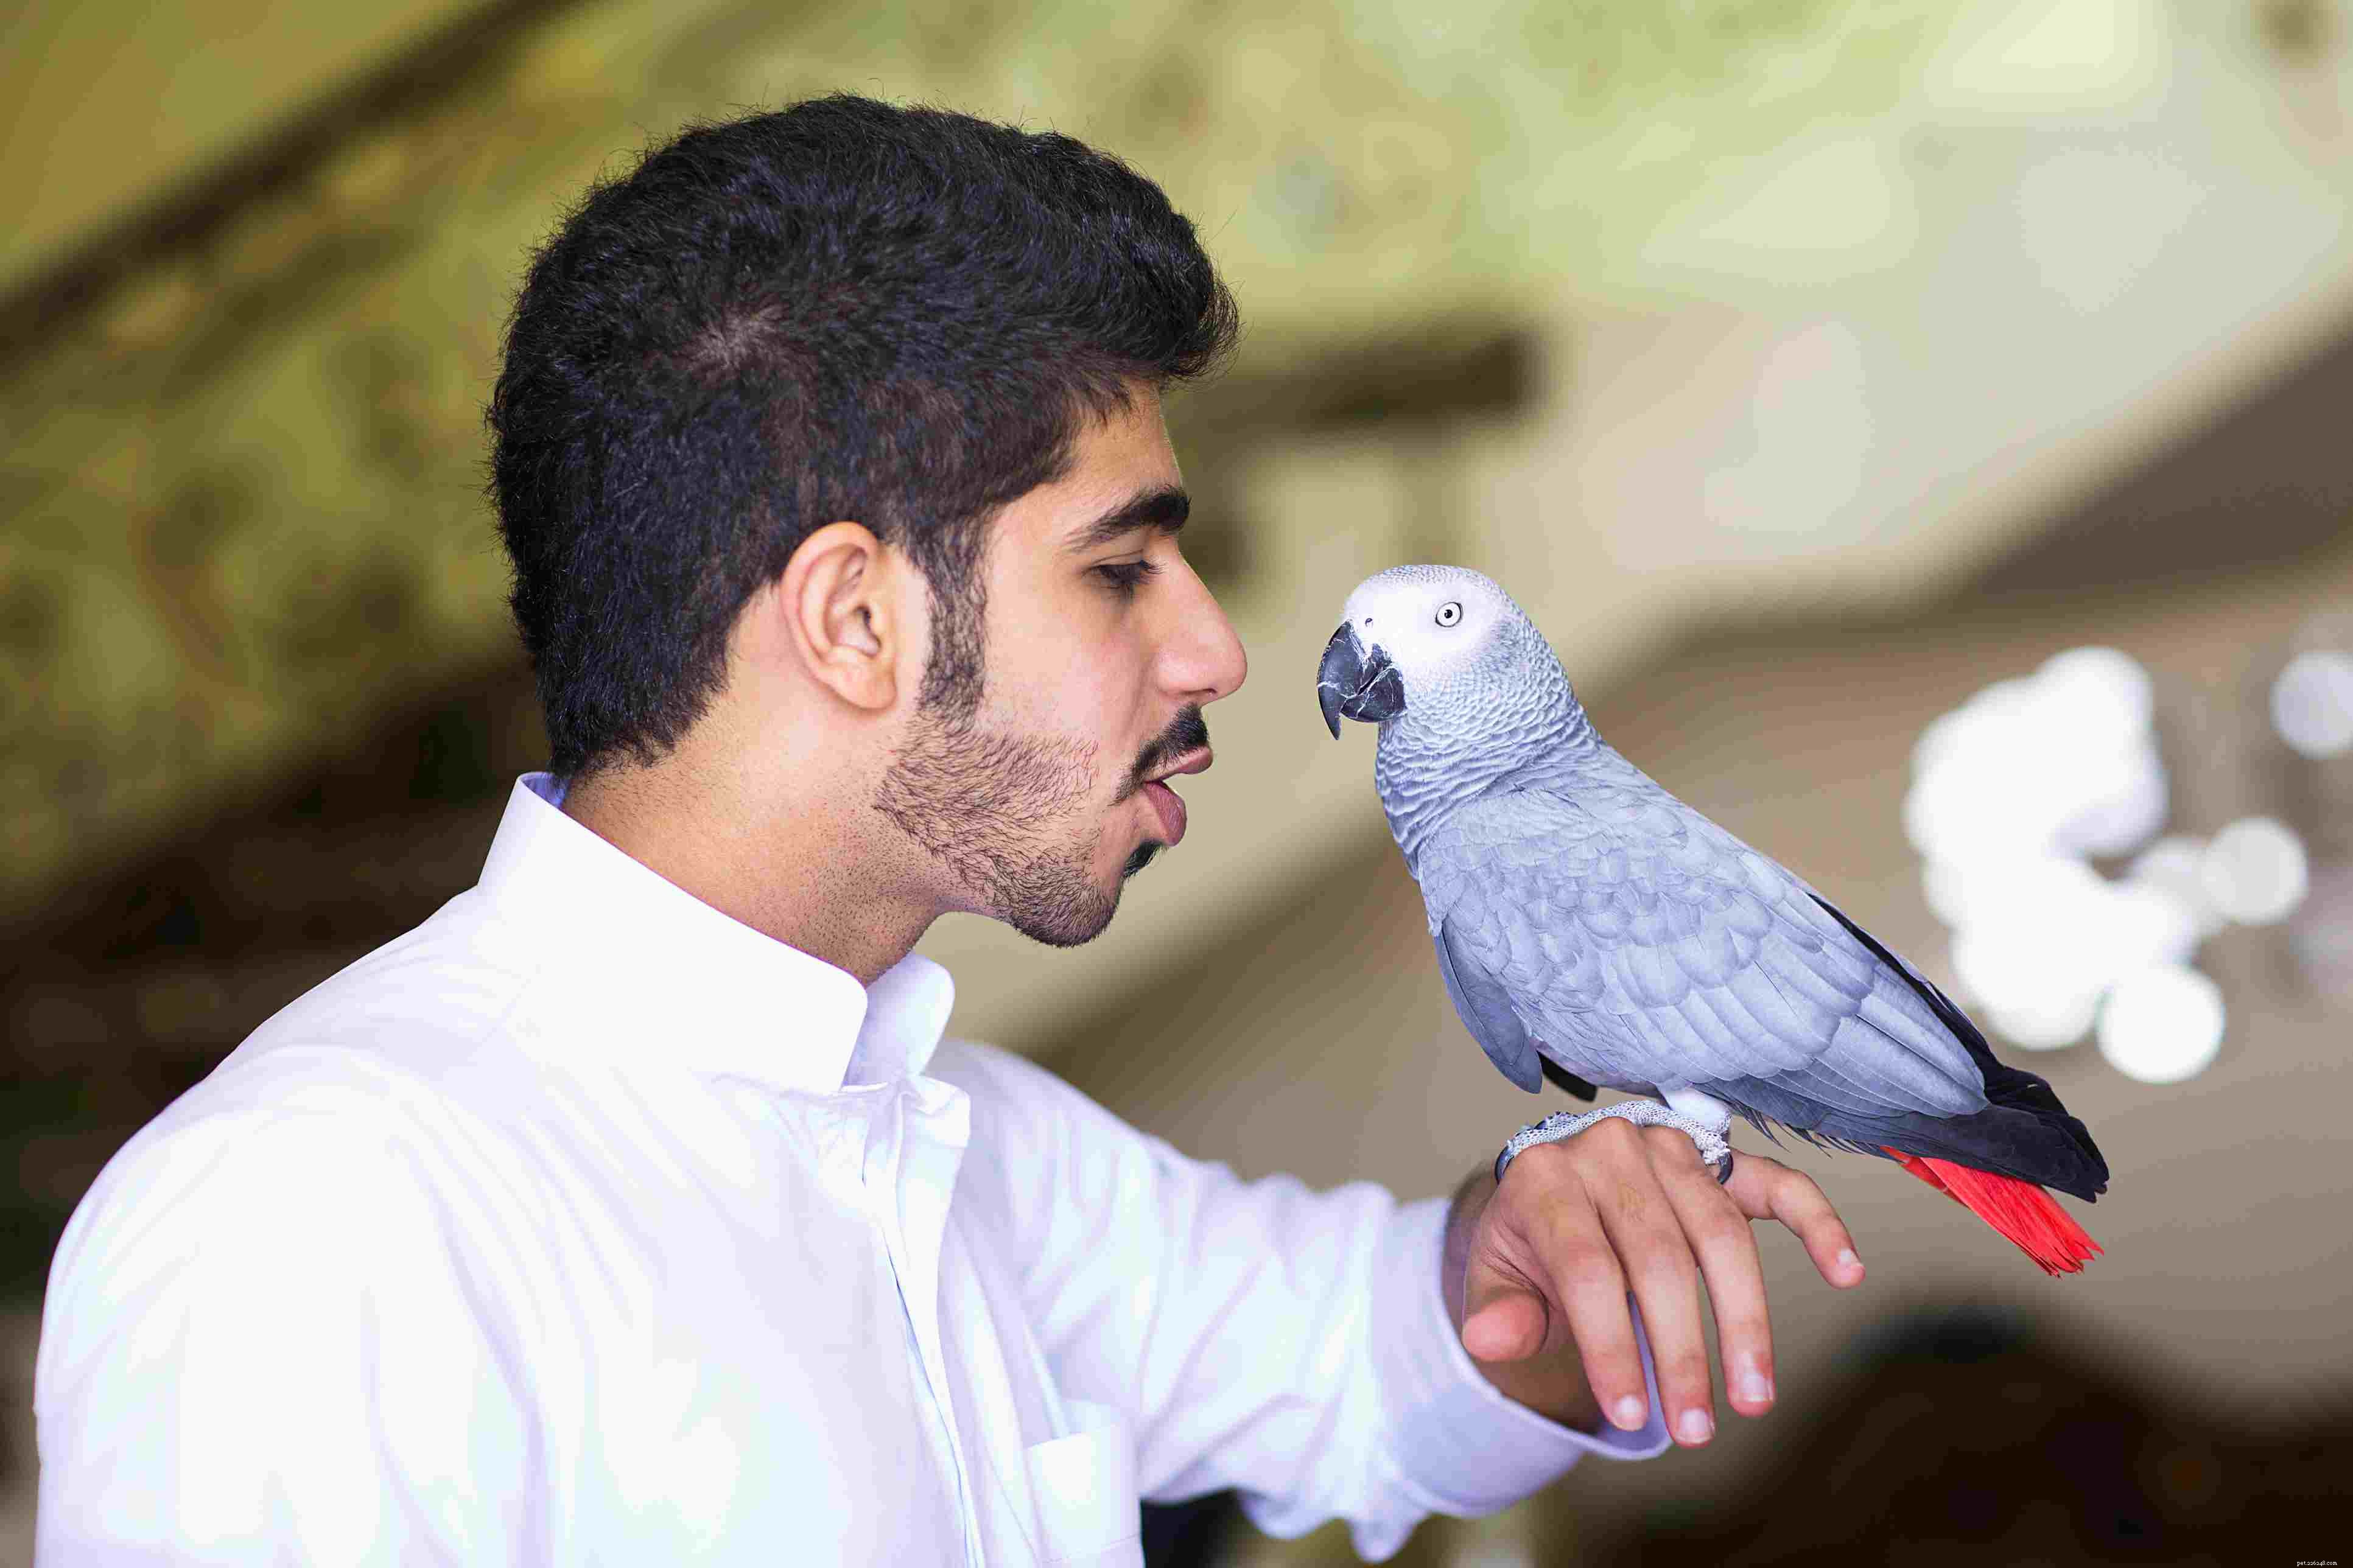 Parole e frasi per insegnare a un pappagallo